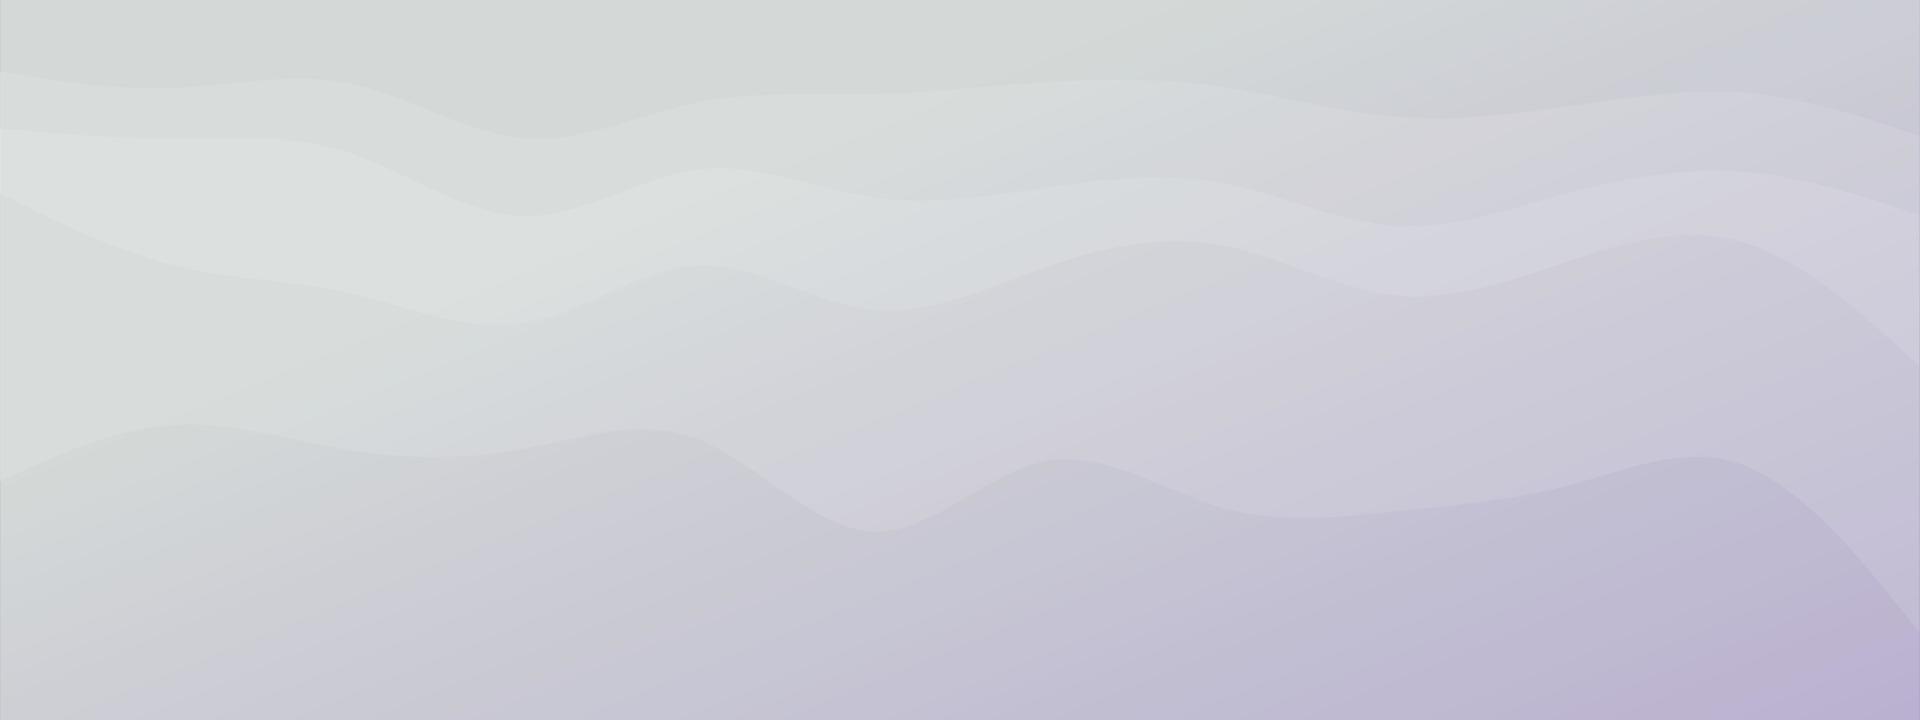 abstracte golf vloeiende vormen minimalistische moderne gradiënt achtergrond gecombineerde pastel lichte kleuren. trendy sjabloon voor de website van de bestemmingspagina van het brochurevisitekaartje. vector illustratie eps 10